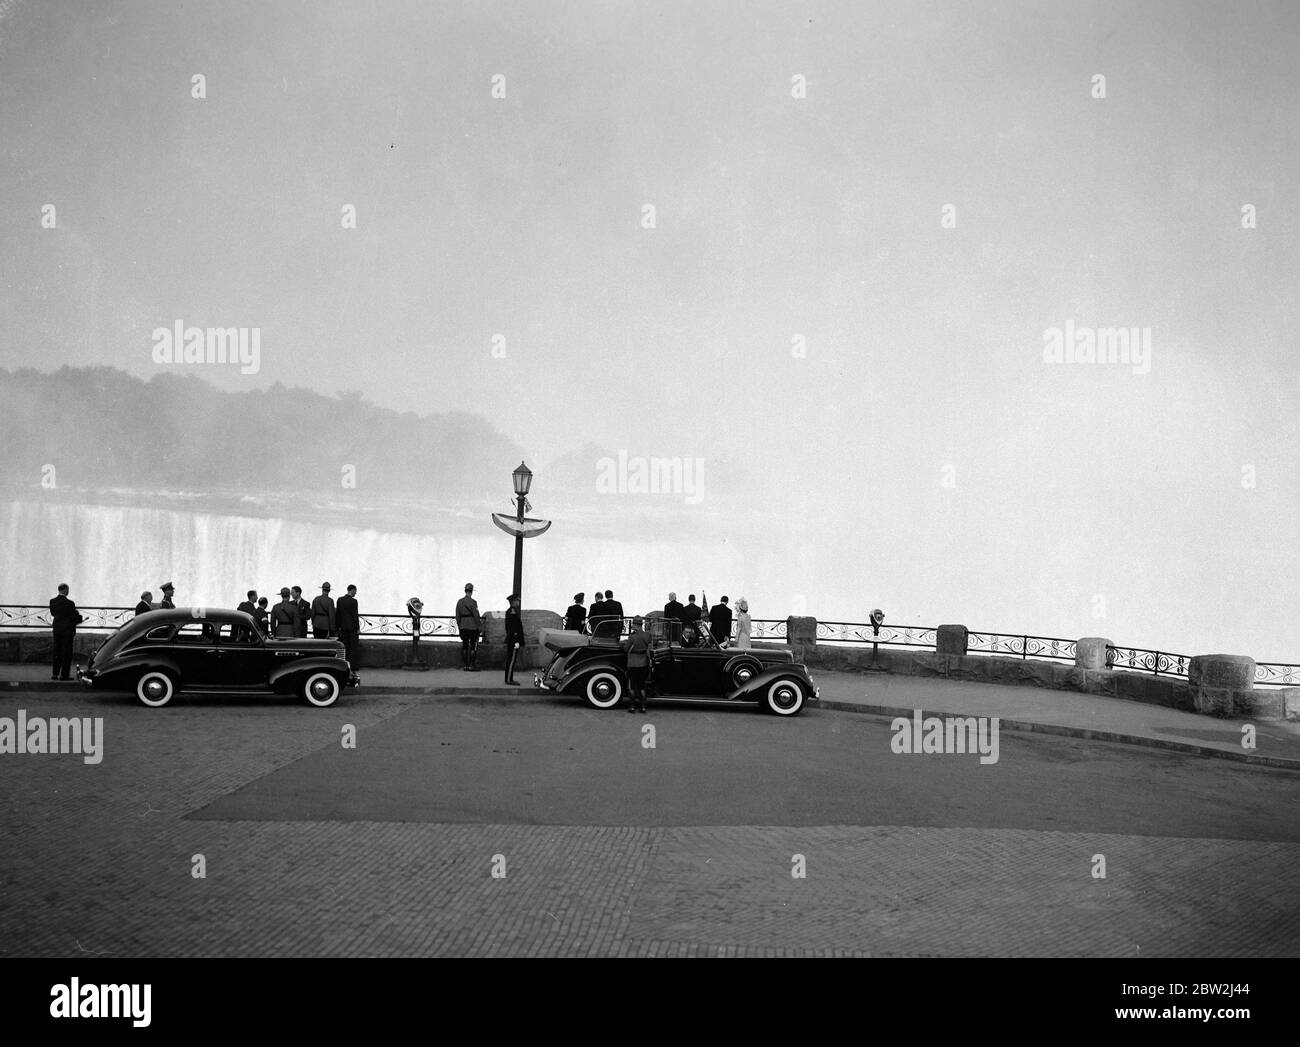 Die Königliche Tour durch Kanada und die USA von König George VI. Und Königin Elizabeth , 1939. Der König und die Königin besuchen die Niagara Fälle, Ontario, bevor sie in die Vereinigten Staaten fahren. Die königliche Party mit Blick auf die Horseshoe Falls. Stockfoto